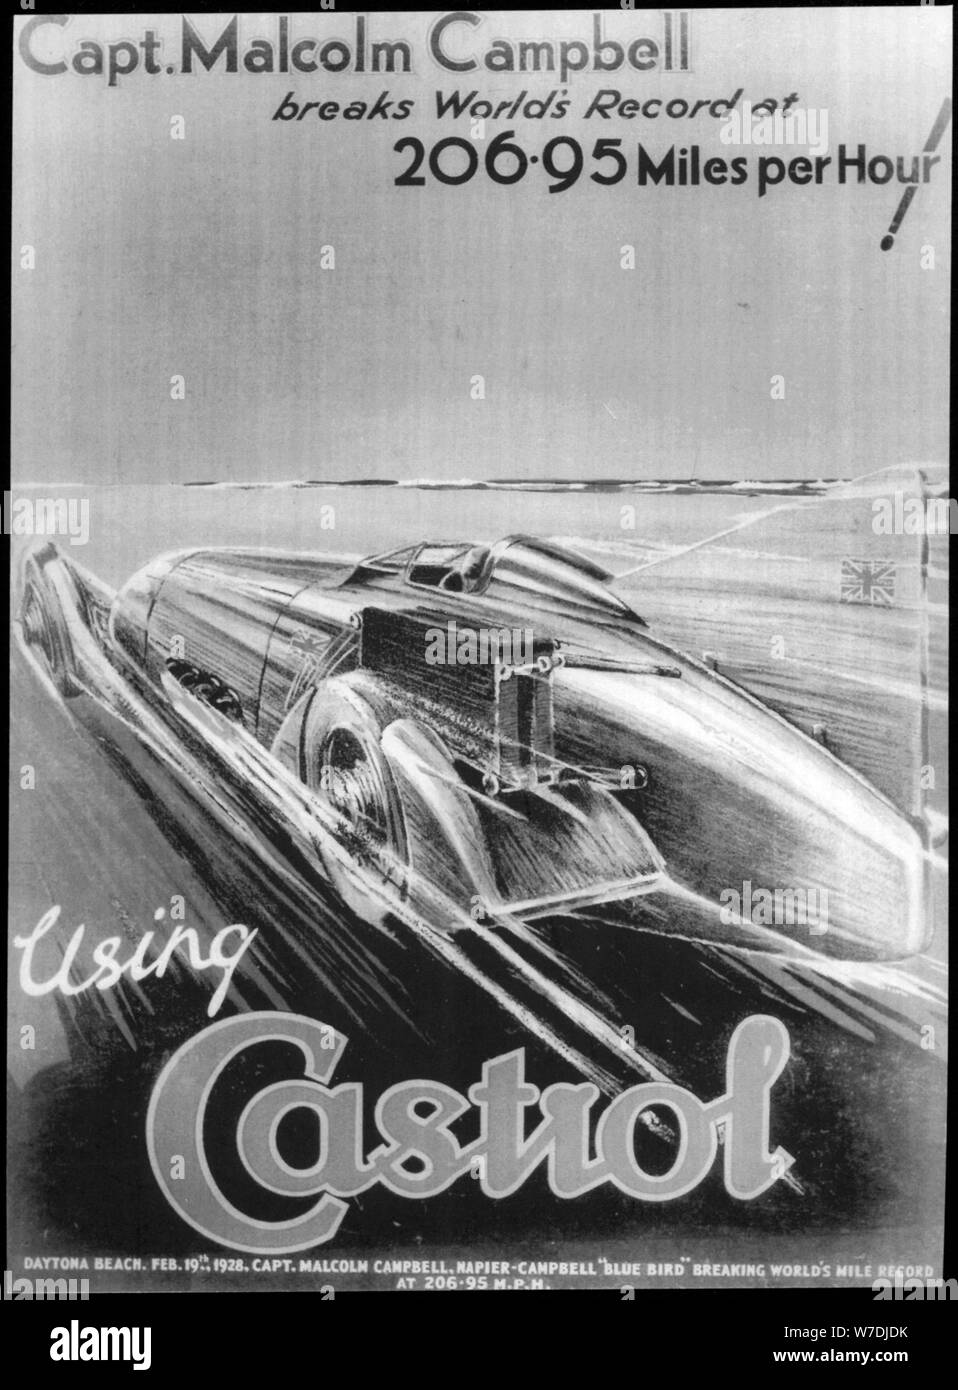 Malcolm Campbell rompe record di velocità su terra, 19 febbraio 1928. Artista: sconosciuto Foto Stock